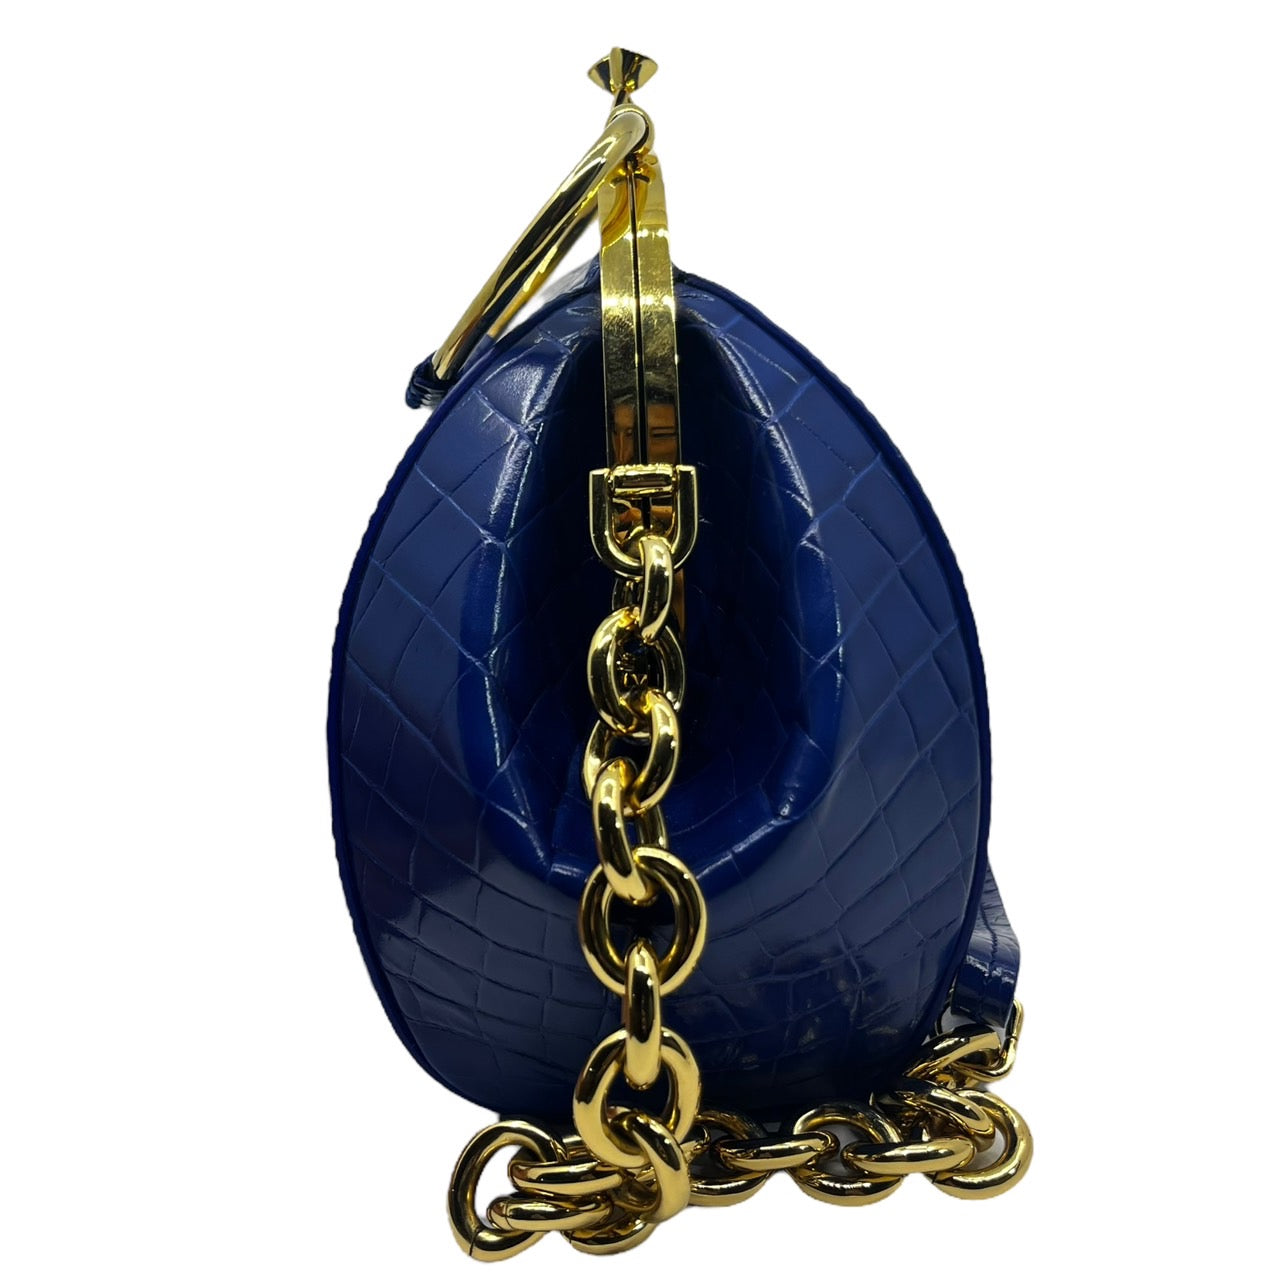 MAISON MARGIELA(メゾンマルジェラ) One-shoulder bag with embossed  pouch/がま口型押しワンショルダーバッグバッグ S36WD0153 ブルー×ゴールド